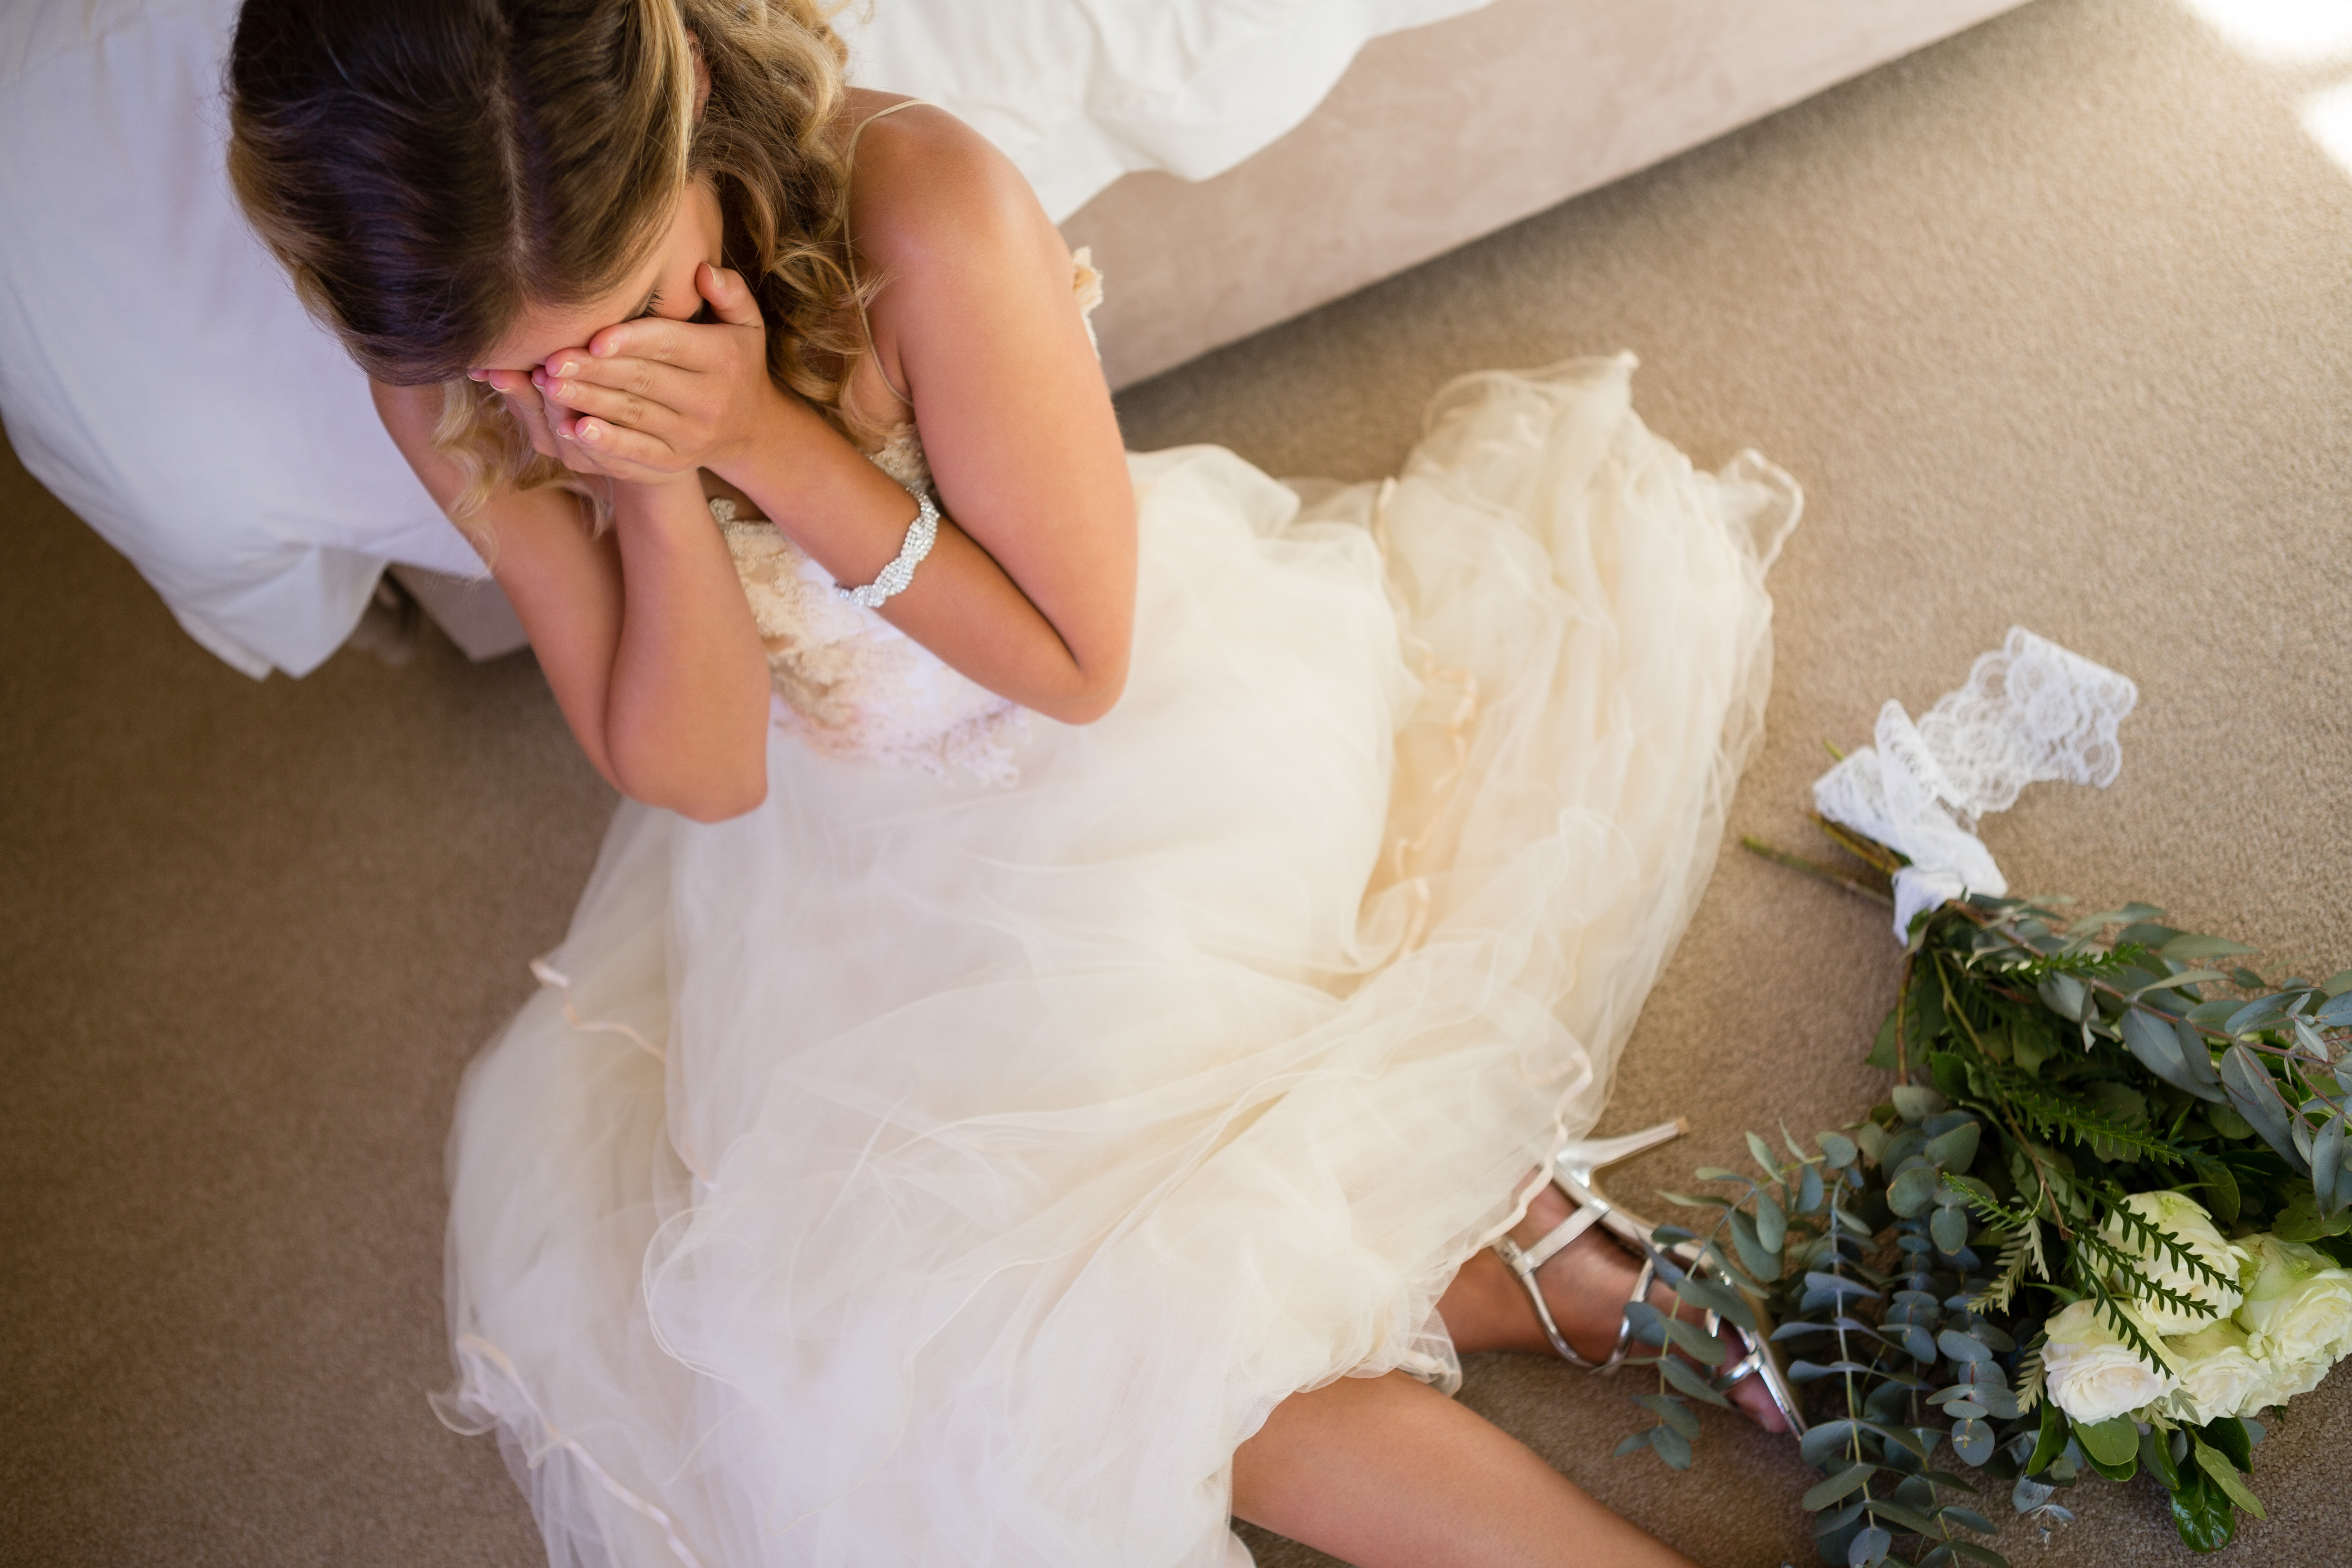 Une mariée qui pleure sur le sol en s'appuyant sur un lit | Source : Shutterstock